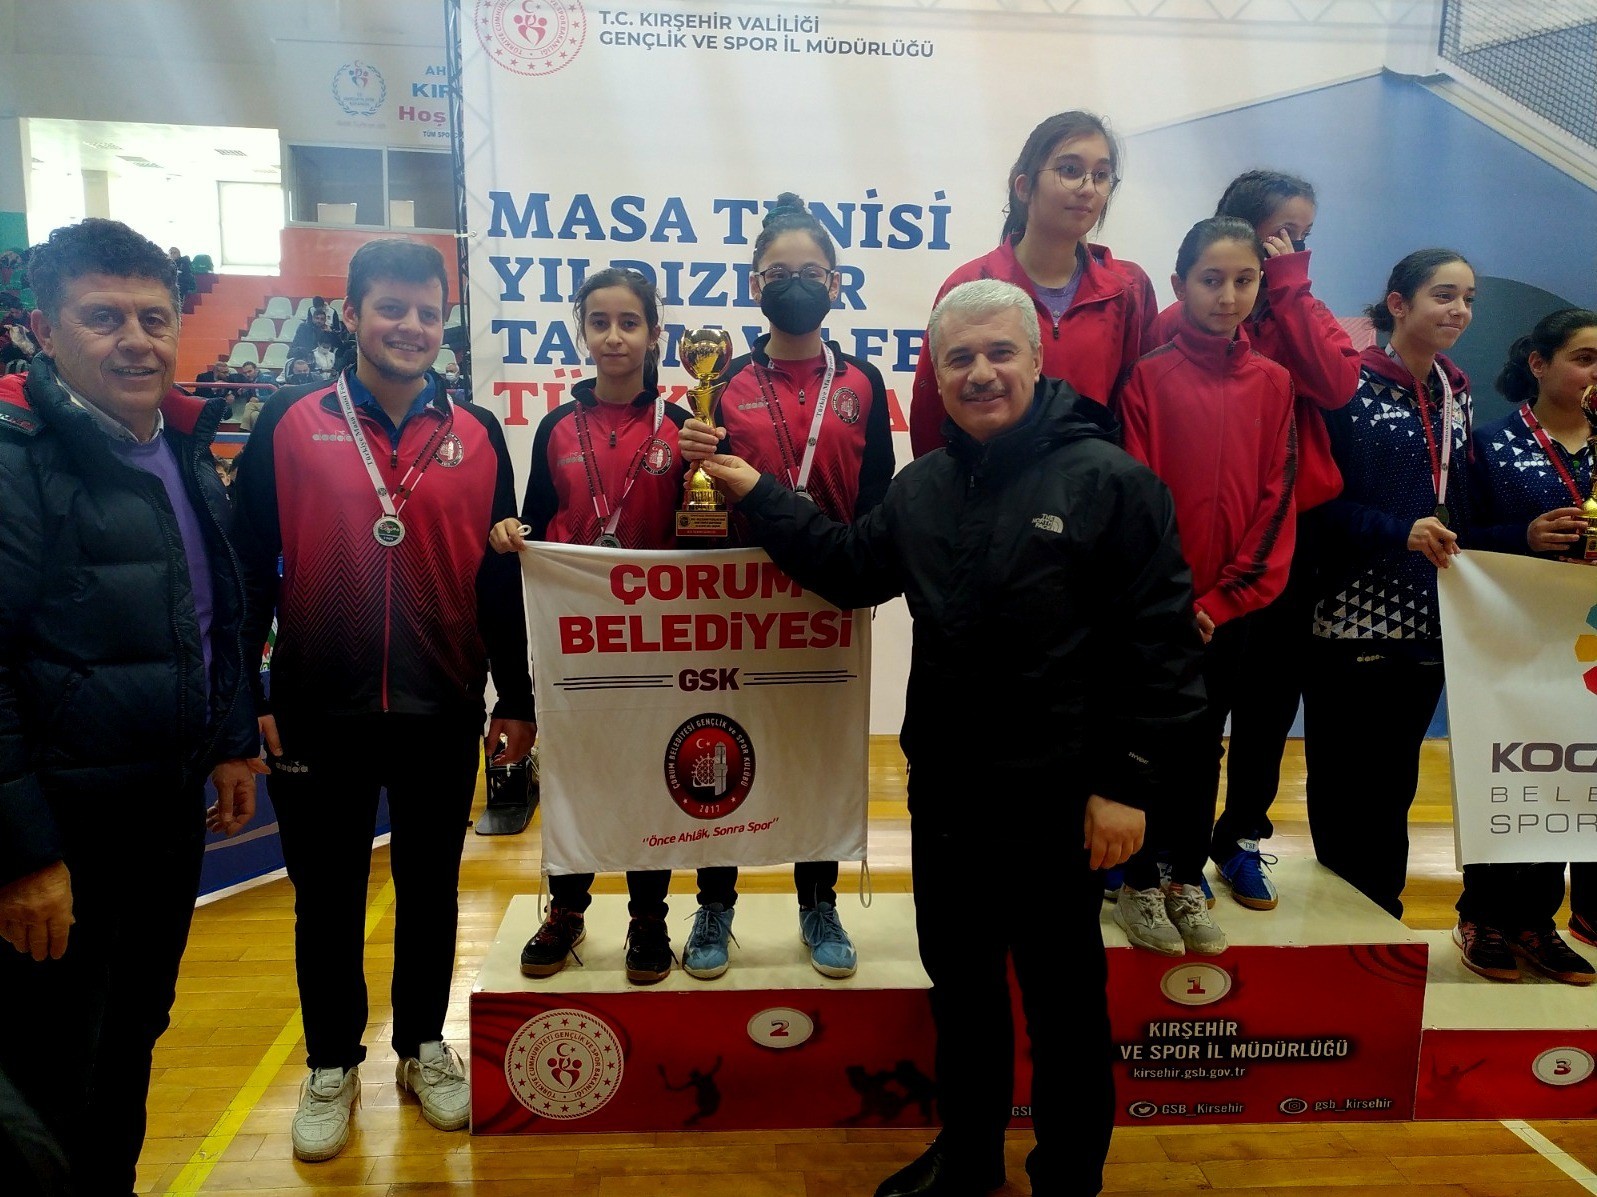 Vali Akın: Kırşehir’de sportif etkinlikleri önemsiyoruz #kirsehir